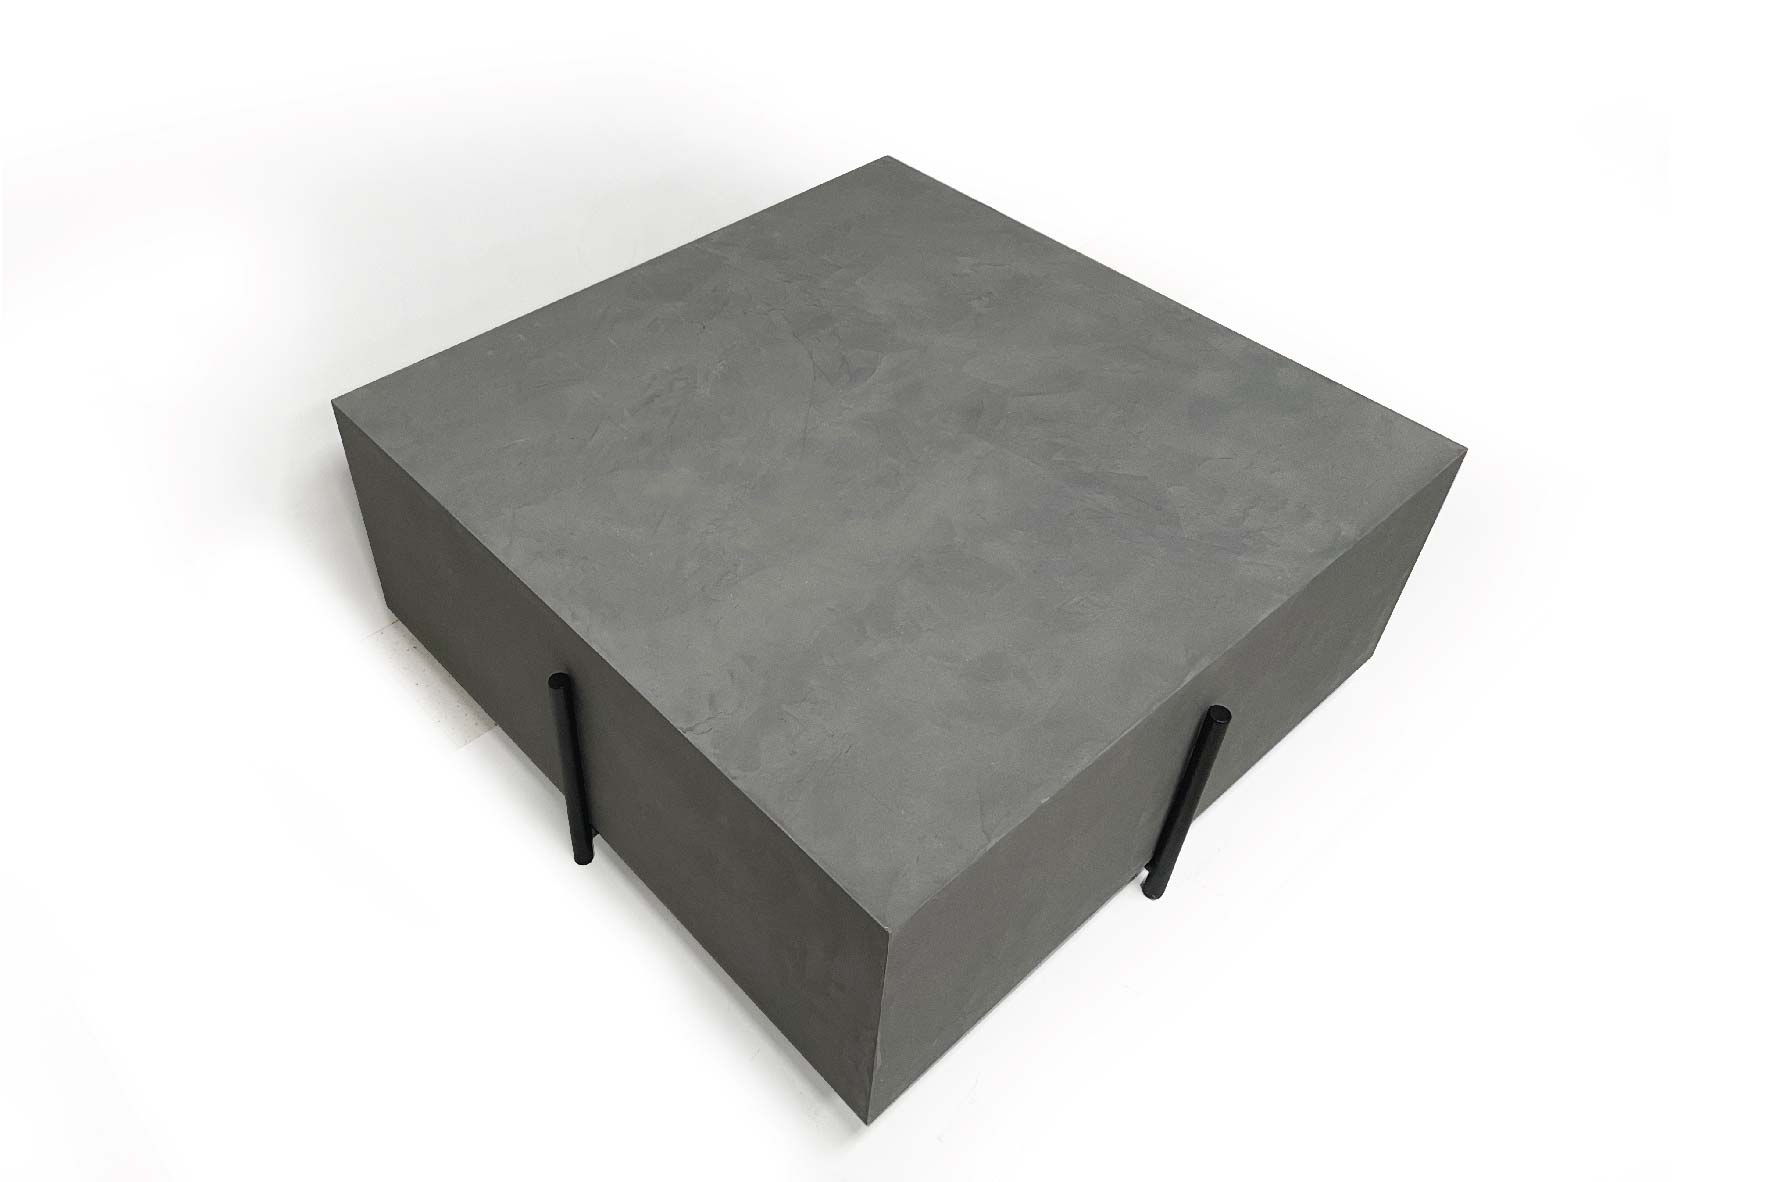 Square Concrete Coffee Table (Black)